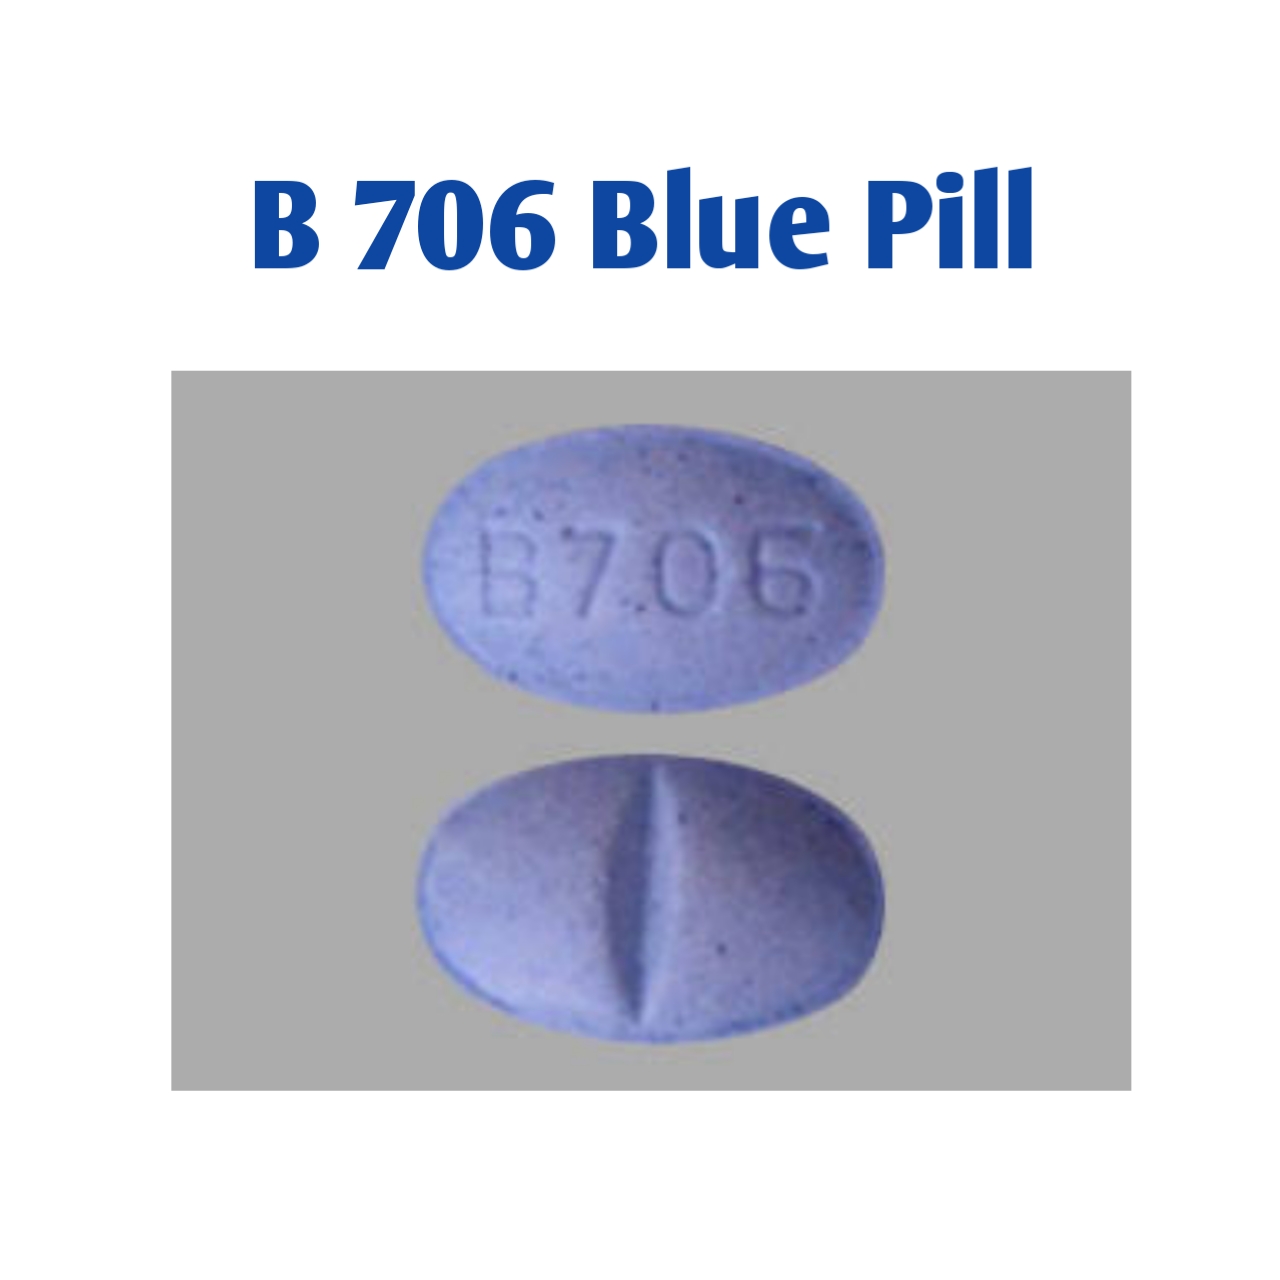 b706 blue pill